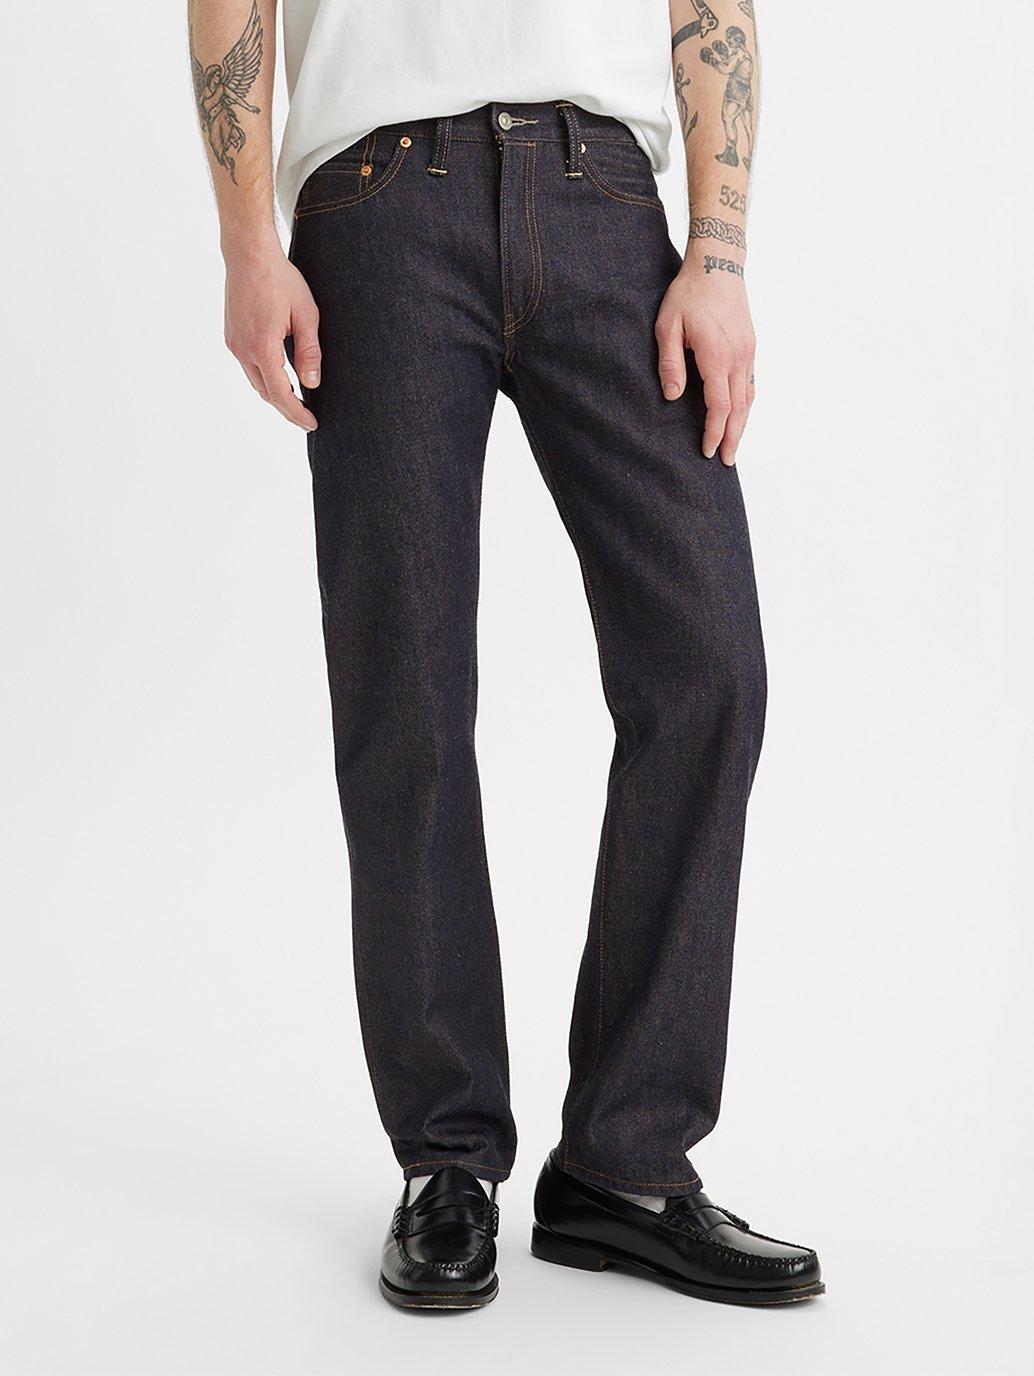 Buy Levi's® Vintage Clothing Men's 1954 501® Jeans | Levi’s® Official ...